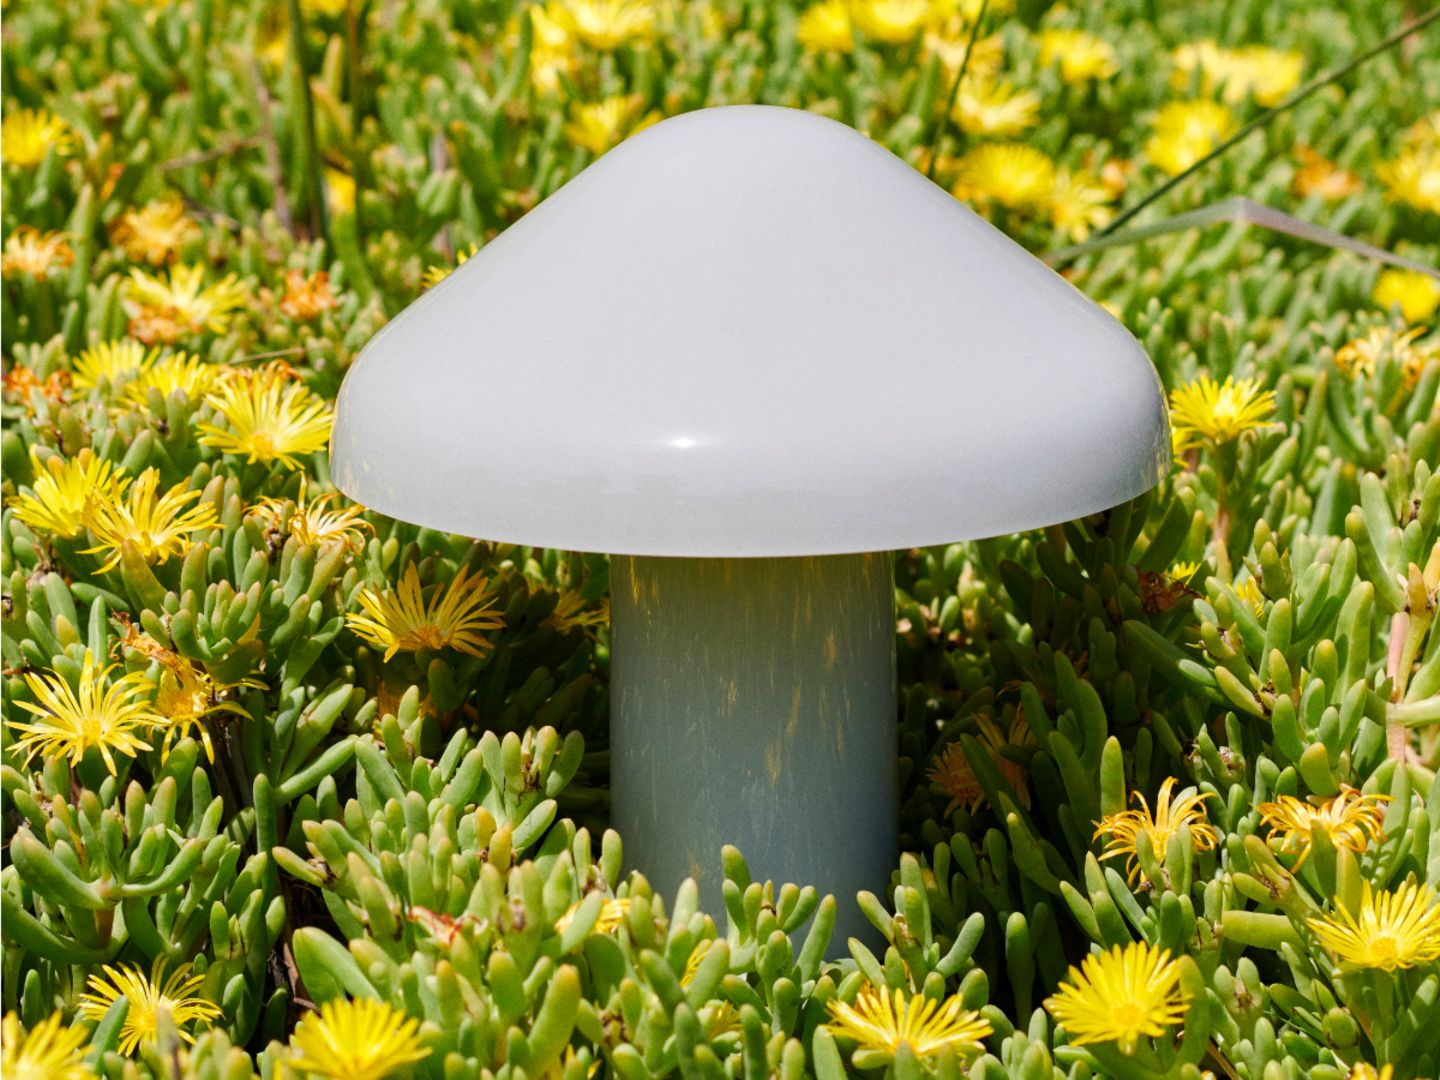 Graue Akkuleuchte in Pilzform mit glänzender Oberfläche inmitten von Pflanzen